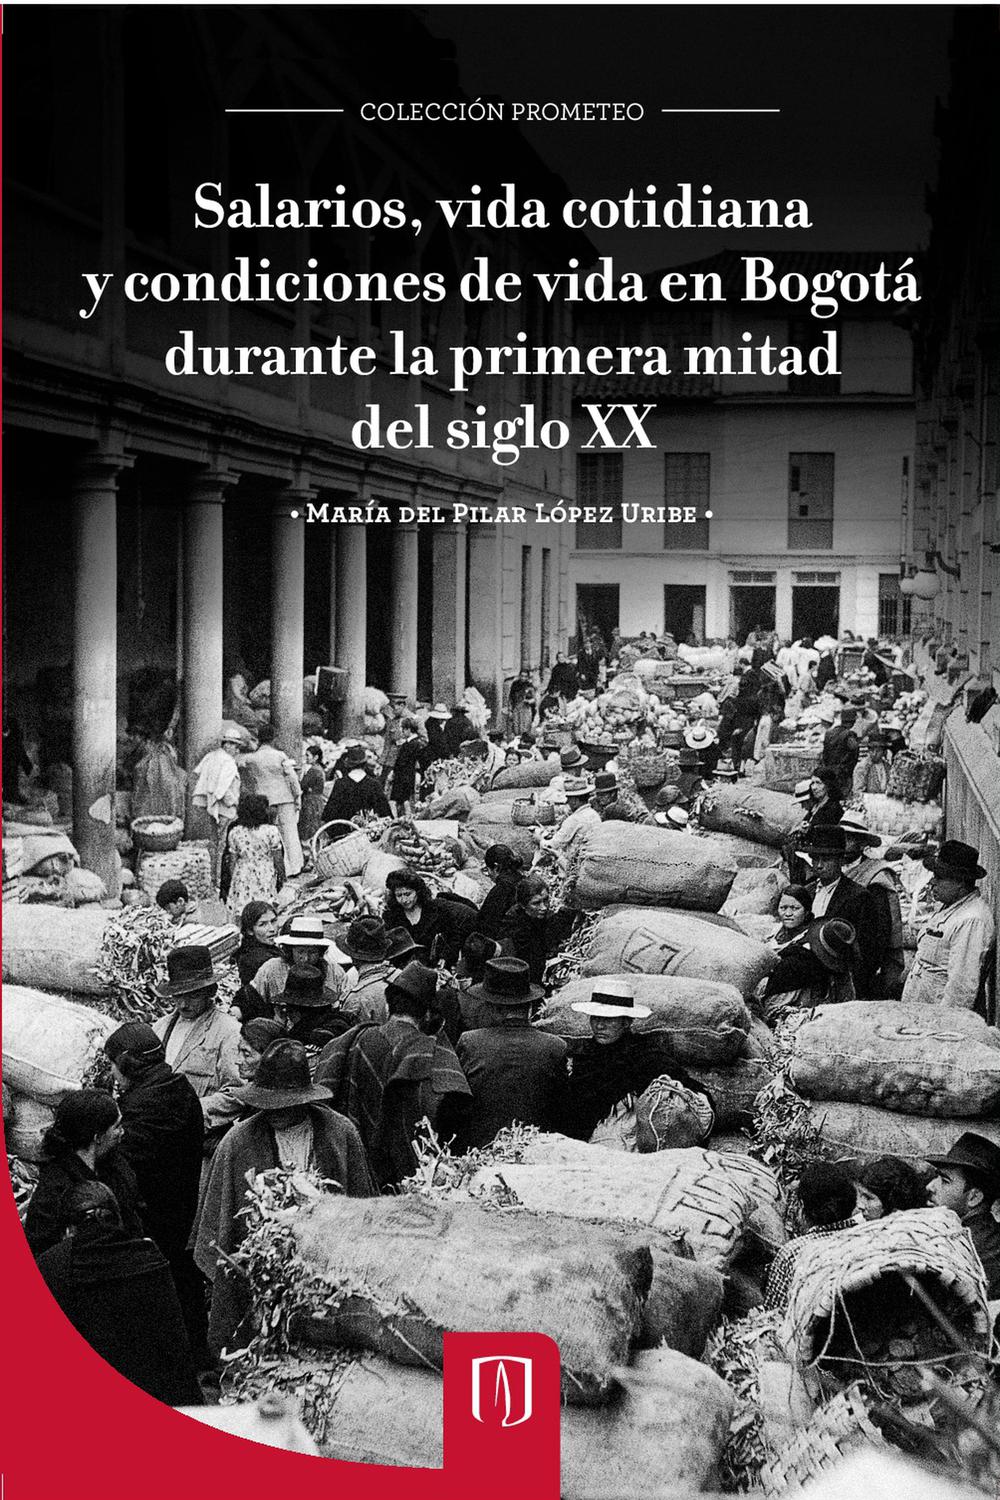 Salarios, vida cotidiana y condiciones de vida en Bogotá durante la primera mitad del siglo XX - María del Pilar López Uribe